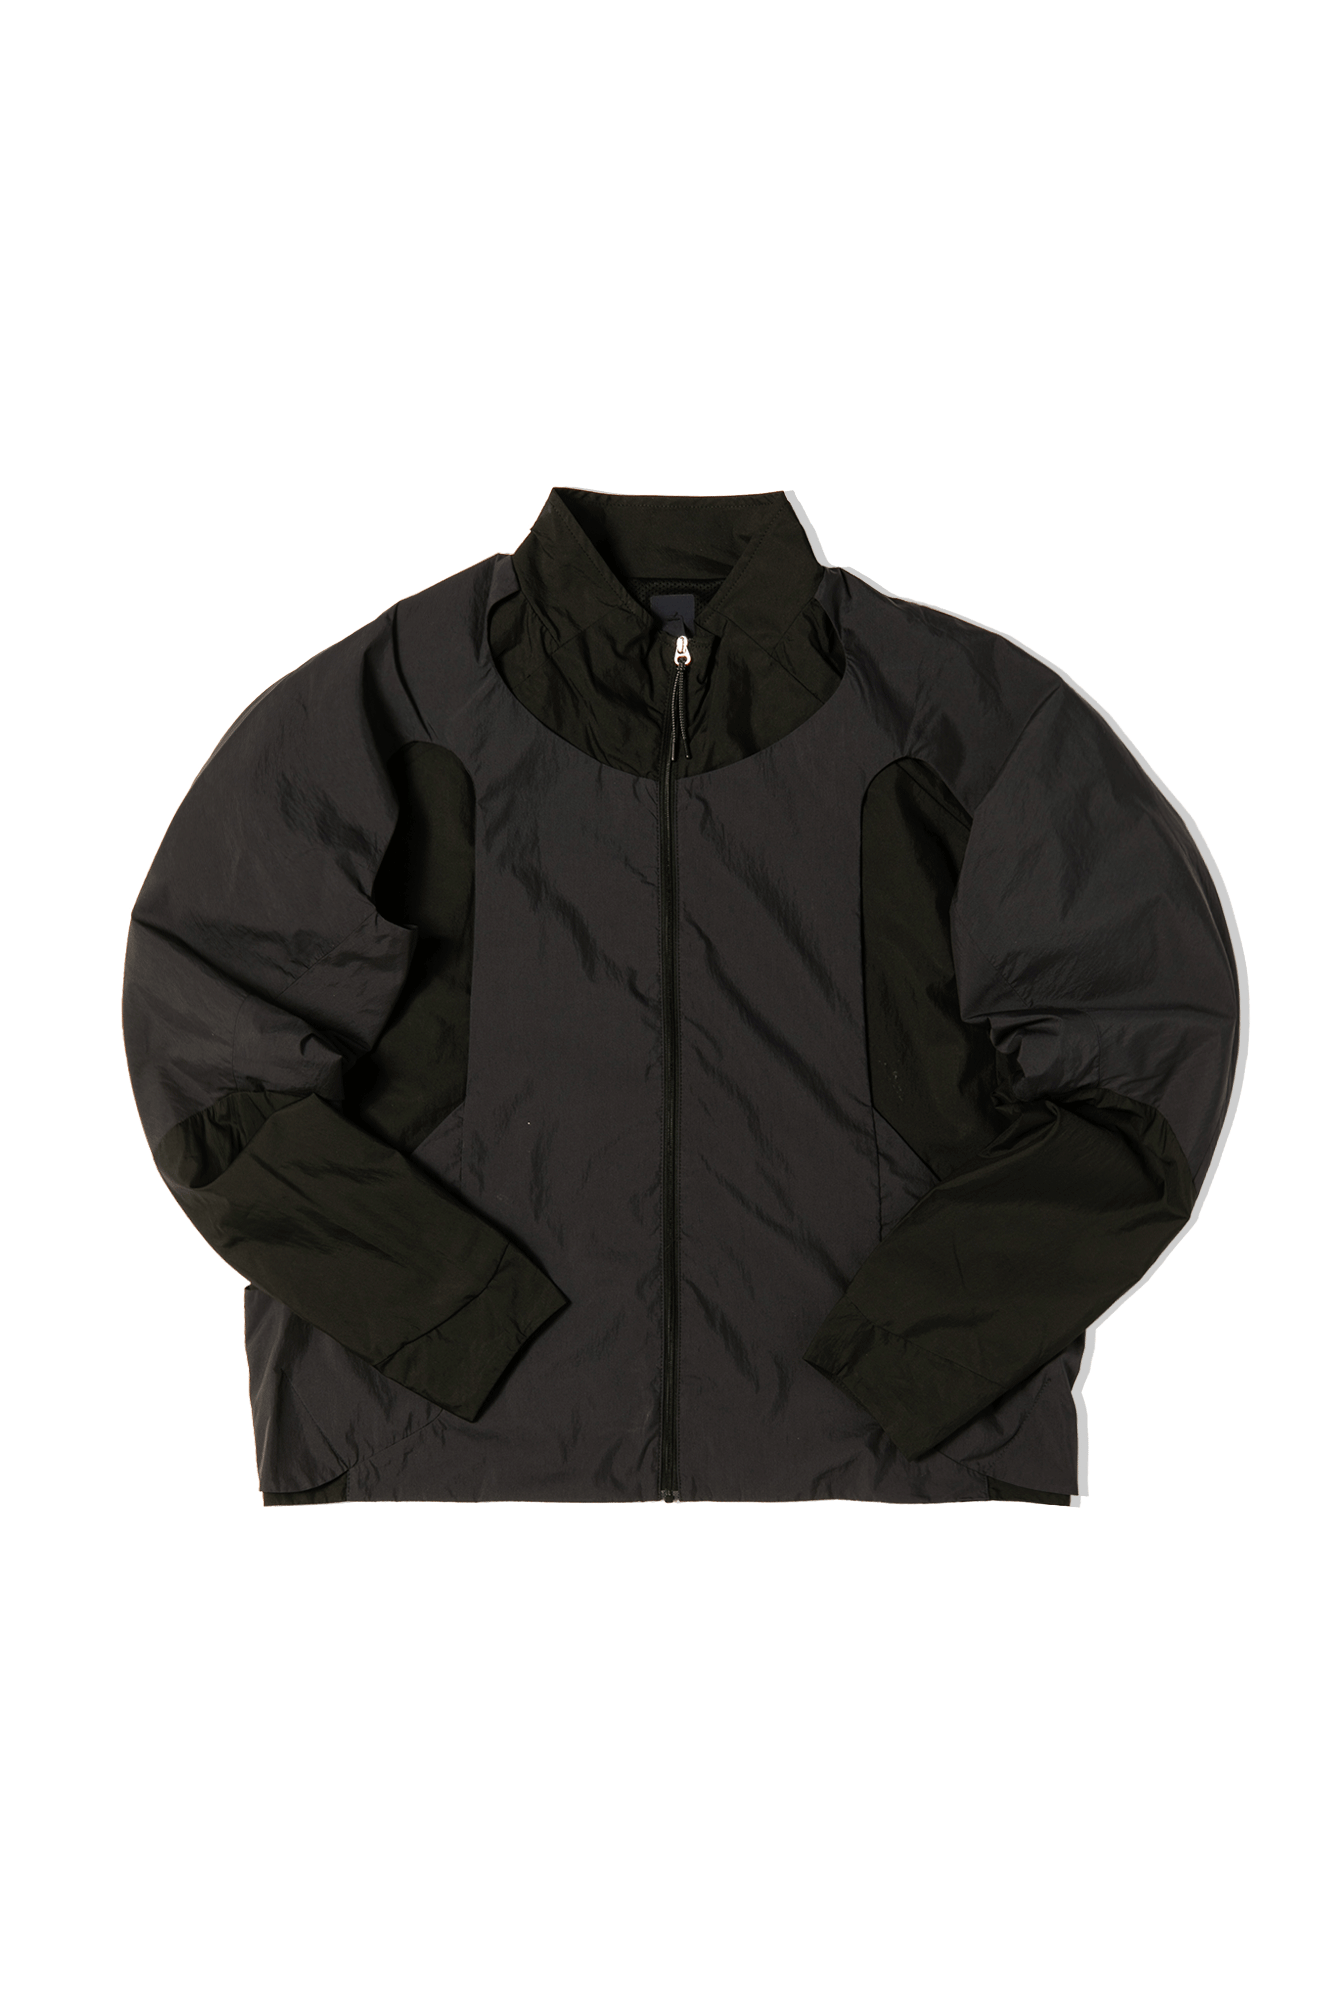 arc'teryx fleece jacket archive 90s 00s袖丈約62cm